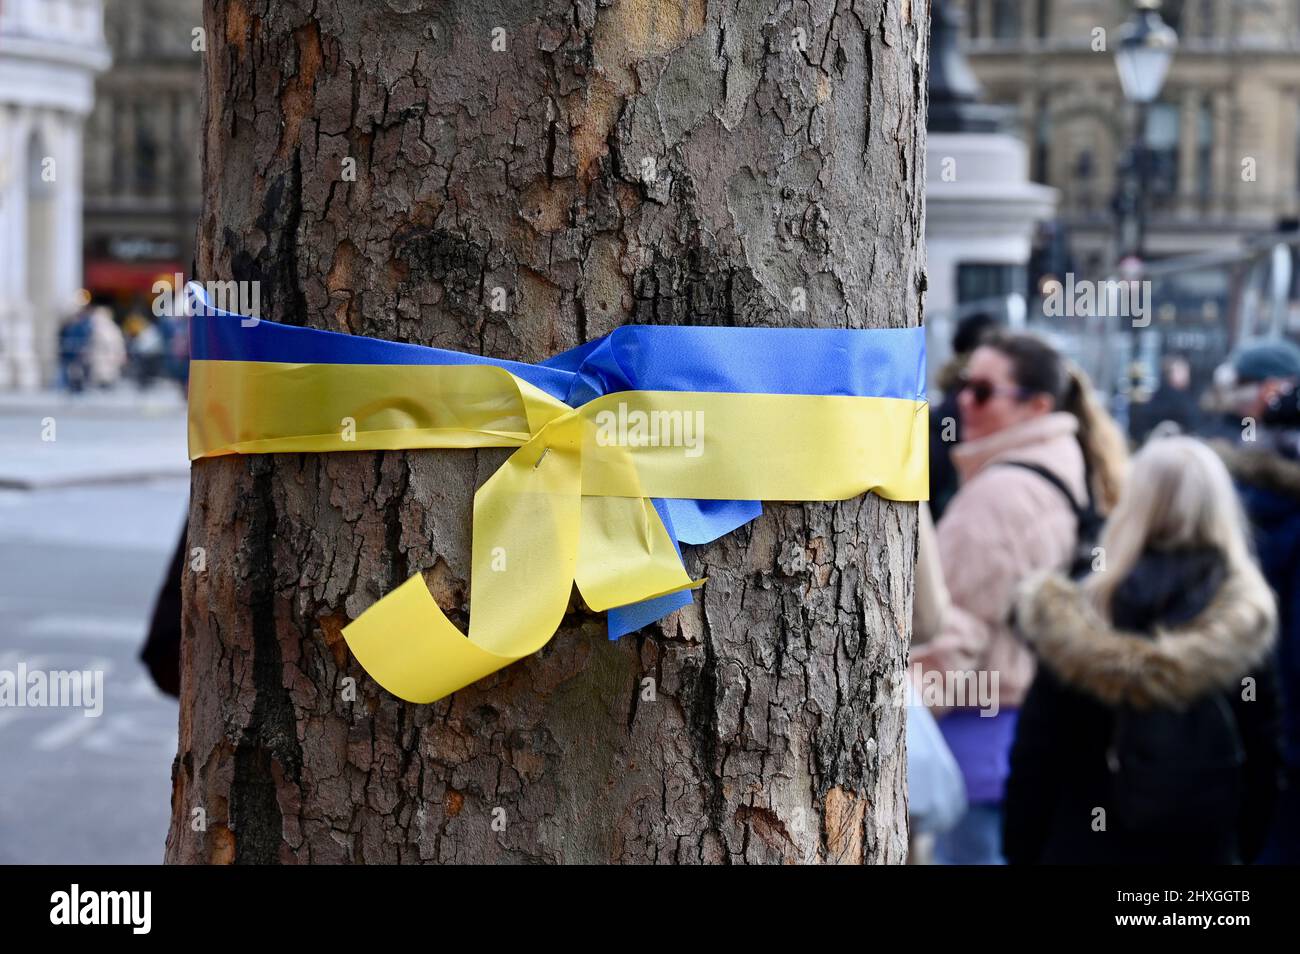 Londra, UK.Stand con Ucraina. Un nastro in colori ucraini è legato intorno ad un albero in Trafalgar Square in solidarietà con l'Ucraina. Credit: michael melia/Alamy Live News Foto Stock